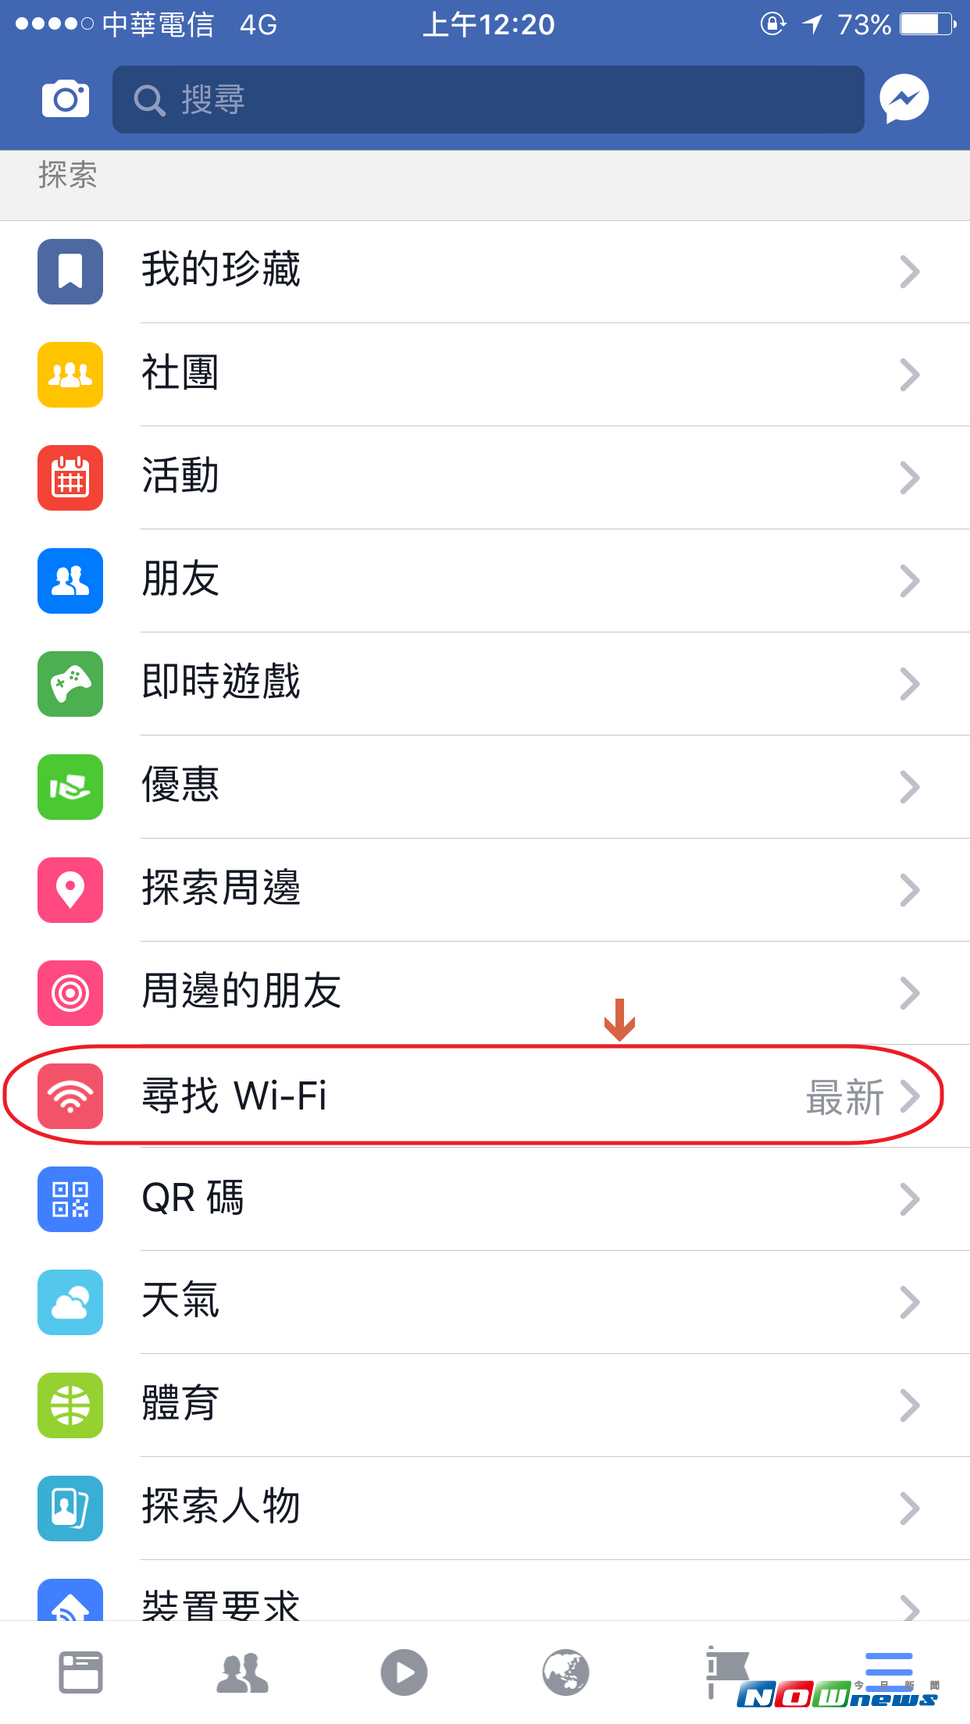 臉書「尋找Wi-Fi」功能　全面開放